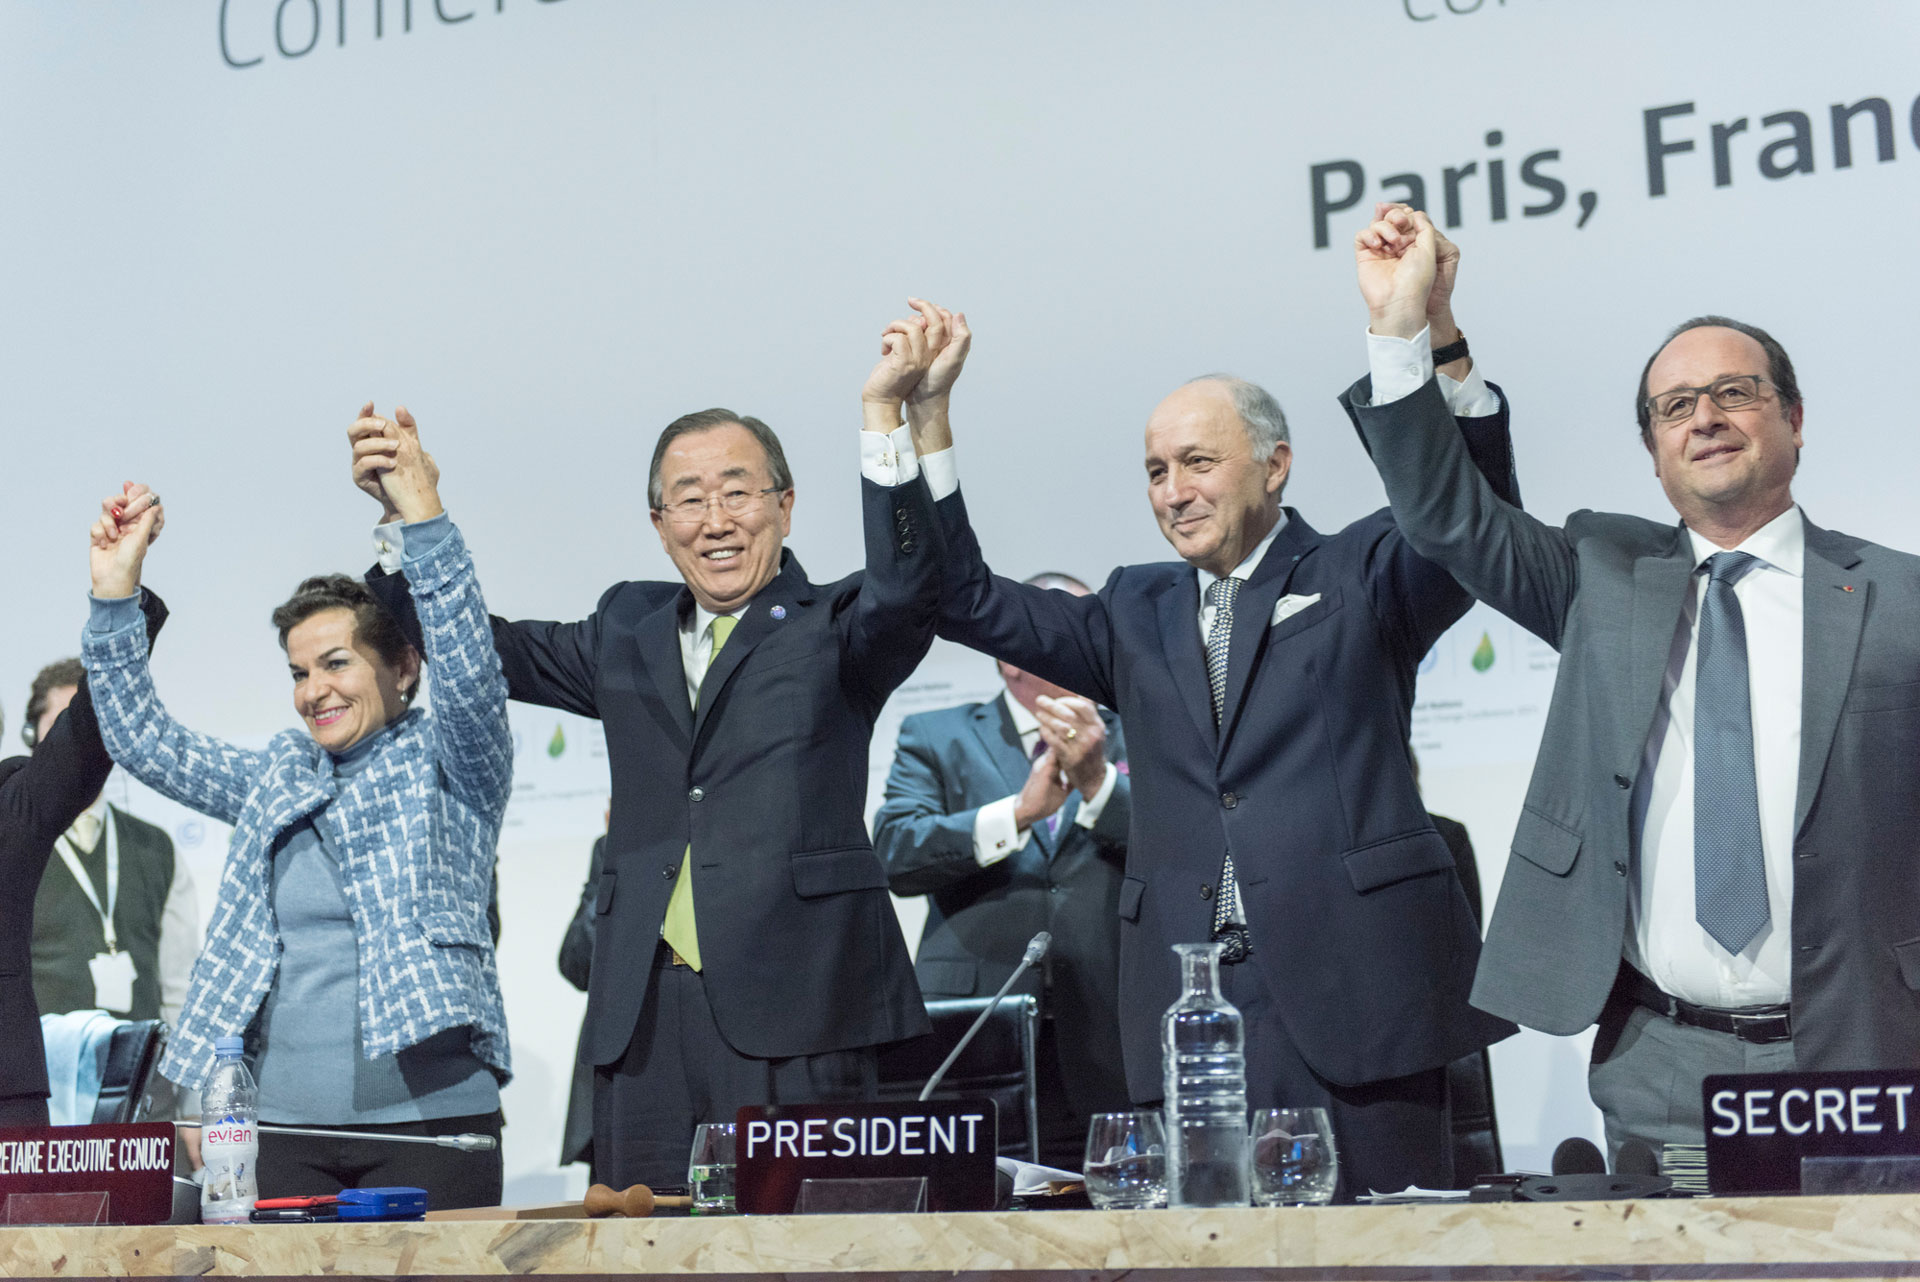 <p><sub>Ban Ki Mun volt ENSZ-főtitkár (balról a második); Christiana Figueres (balra), az ENSZ éghajlatváltozási keretegyezményének (UNFCCC) ügyvezető titkára; Laurent Fabius (jobbról a második), Franciaország külügyminisztere és az ENSZ párizsi éghajlatváltozási konferenciájának (COP21) elnöke, valamint François Hollande (jobbra), Franciaország elnöke ünnepelnek az éghajlatváltozásról szóló párizsi megállapodás történelmi jelentőségű elfogadása után.</sub></p>